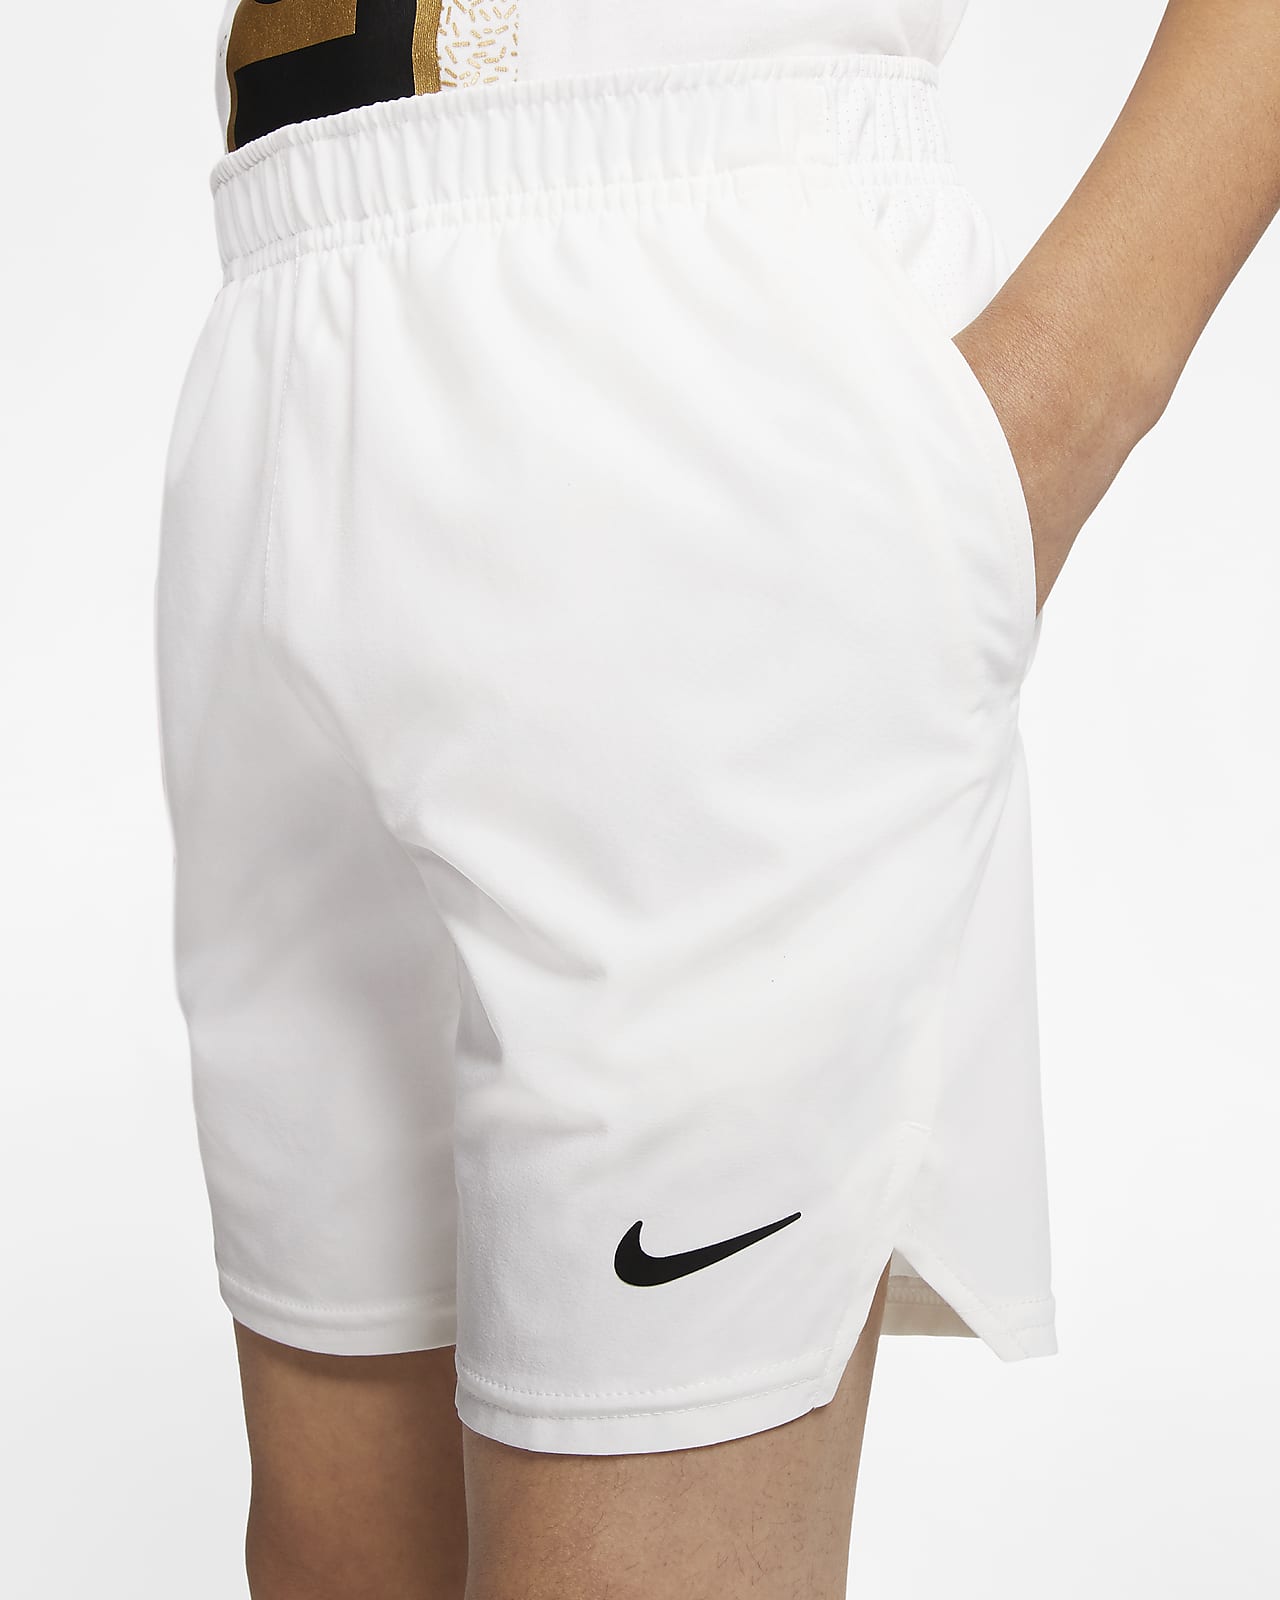 Older Kids' (Boys') Tennis Shorts. Nike 